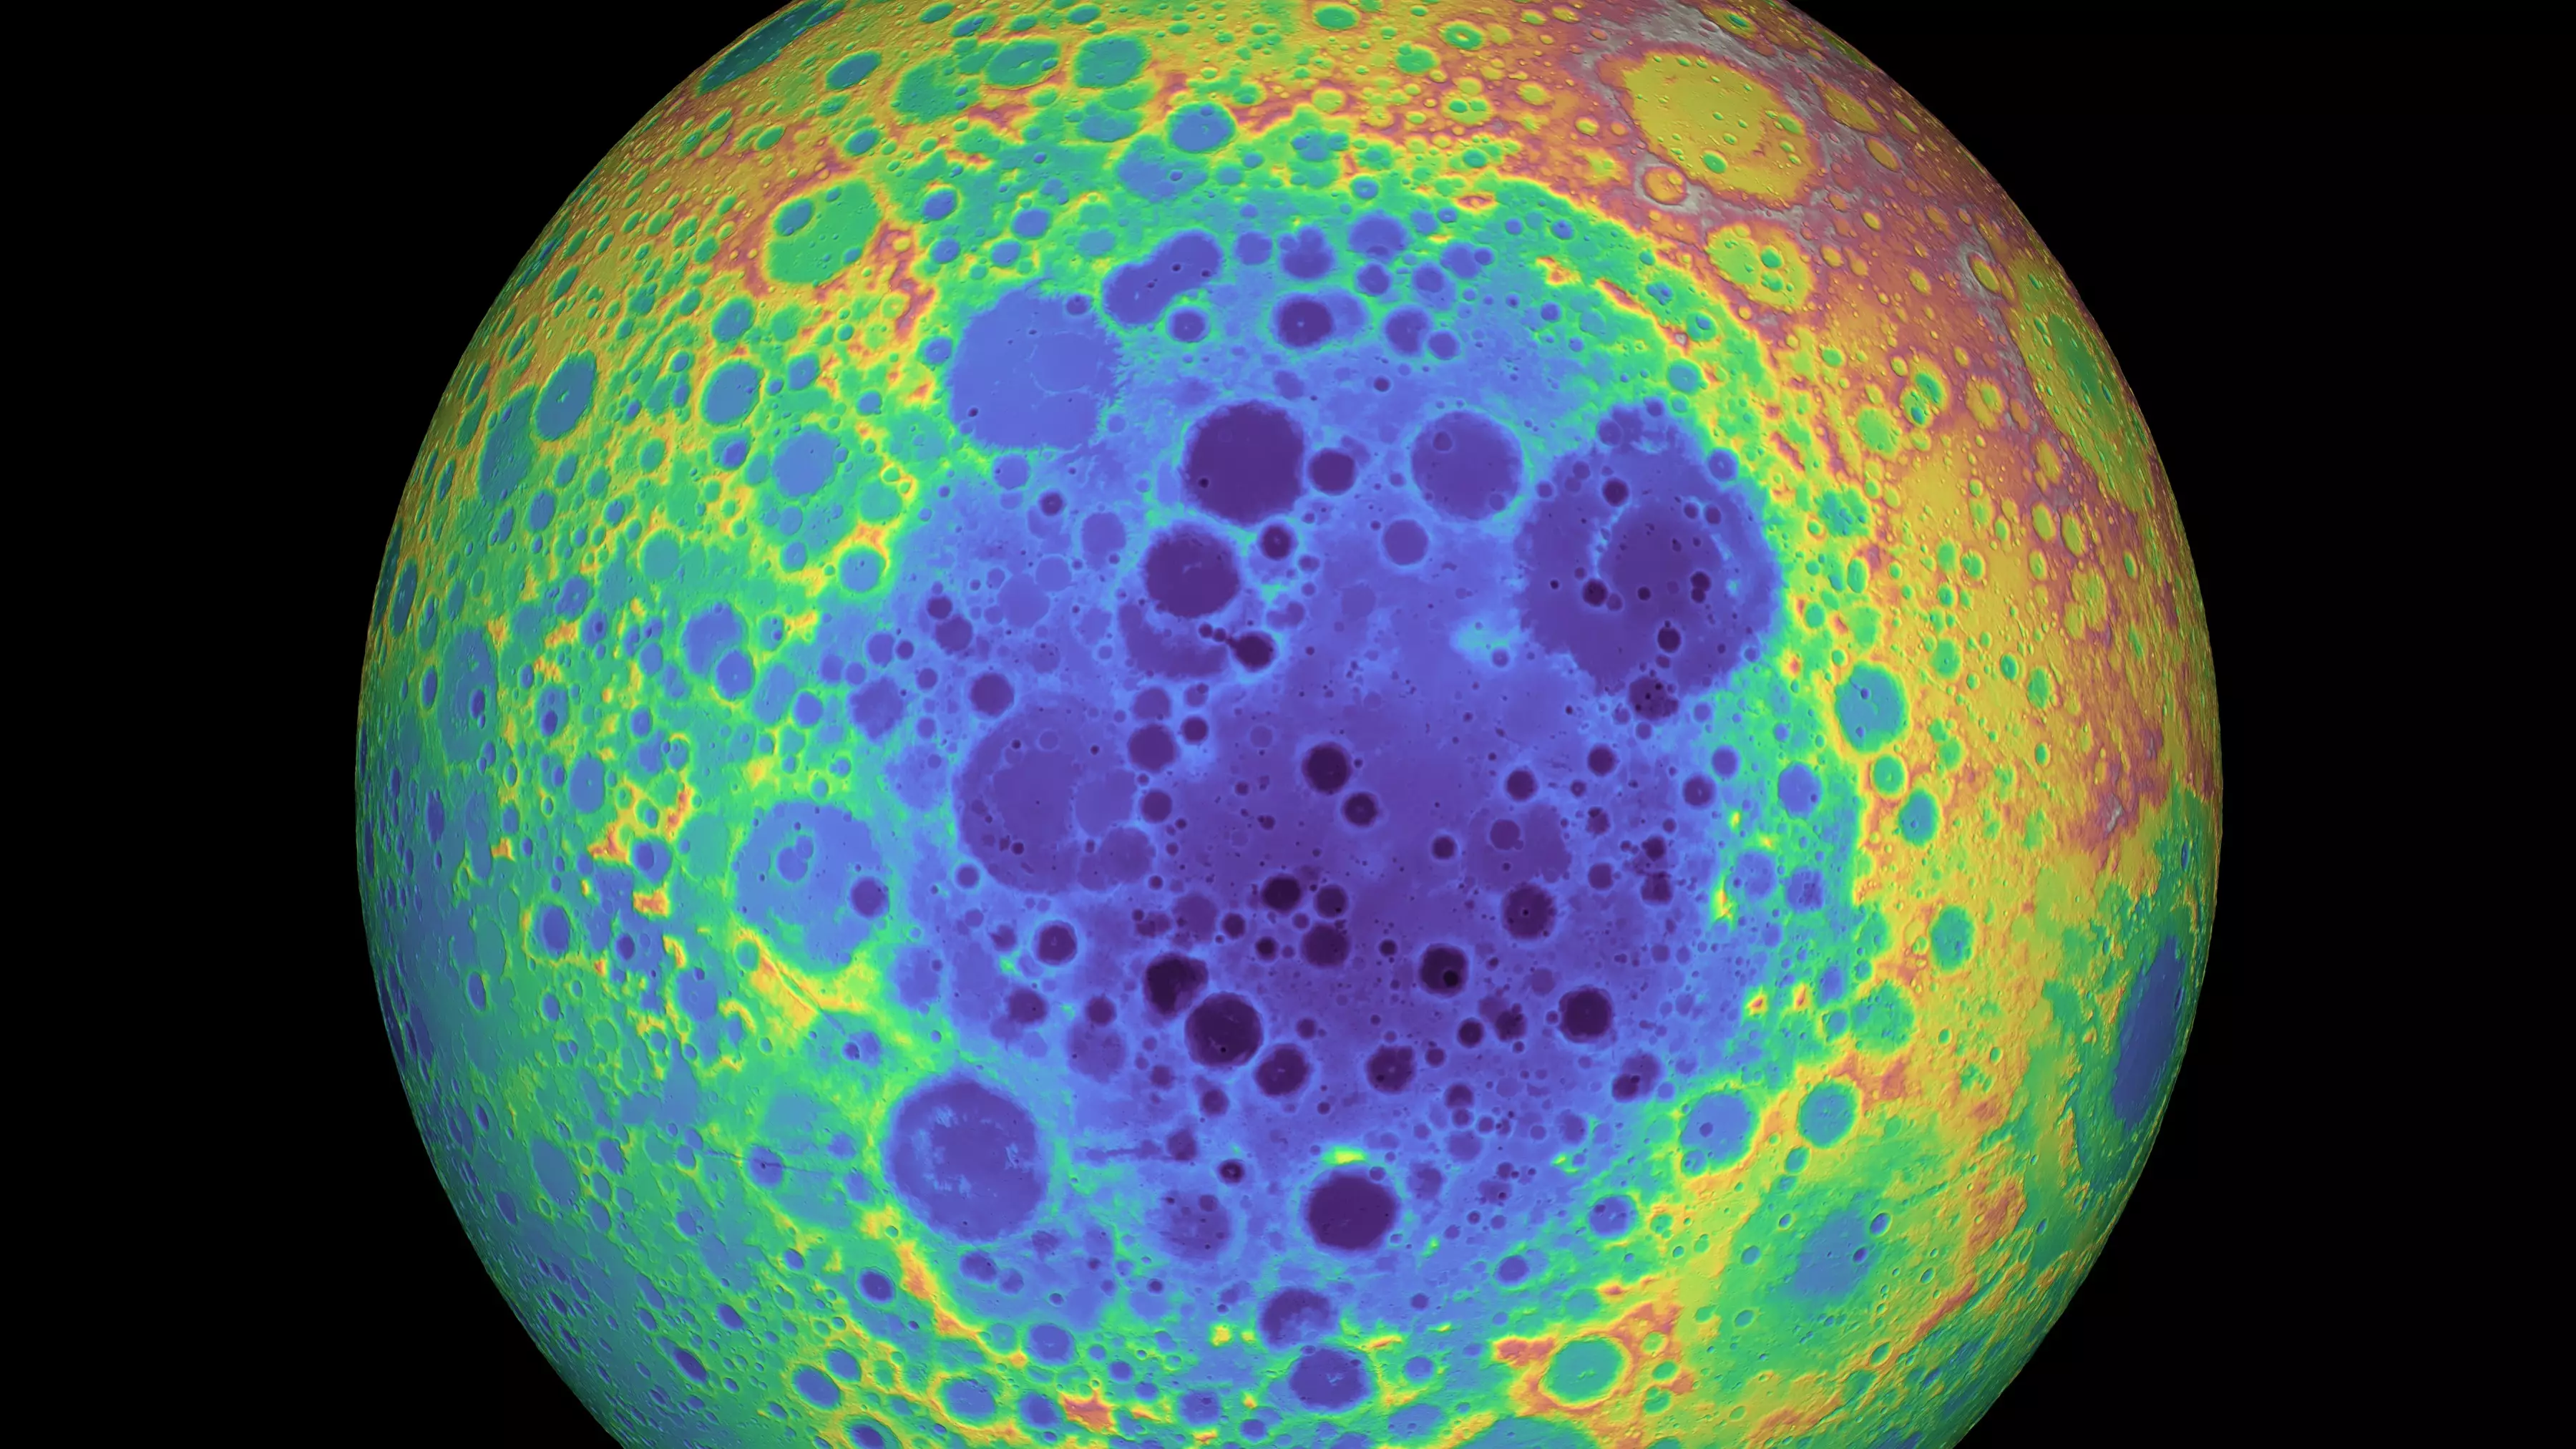 Айткенскій басейн (виділено фіолетовим кольором) являє собою гігантський кратер від стародавнього падіння метеорита